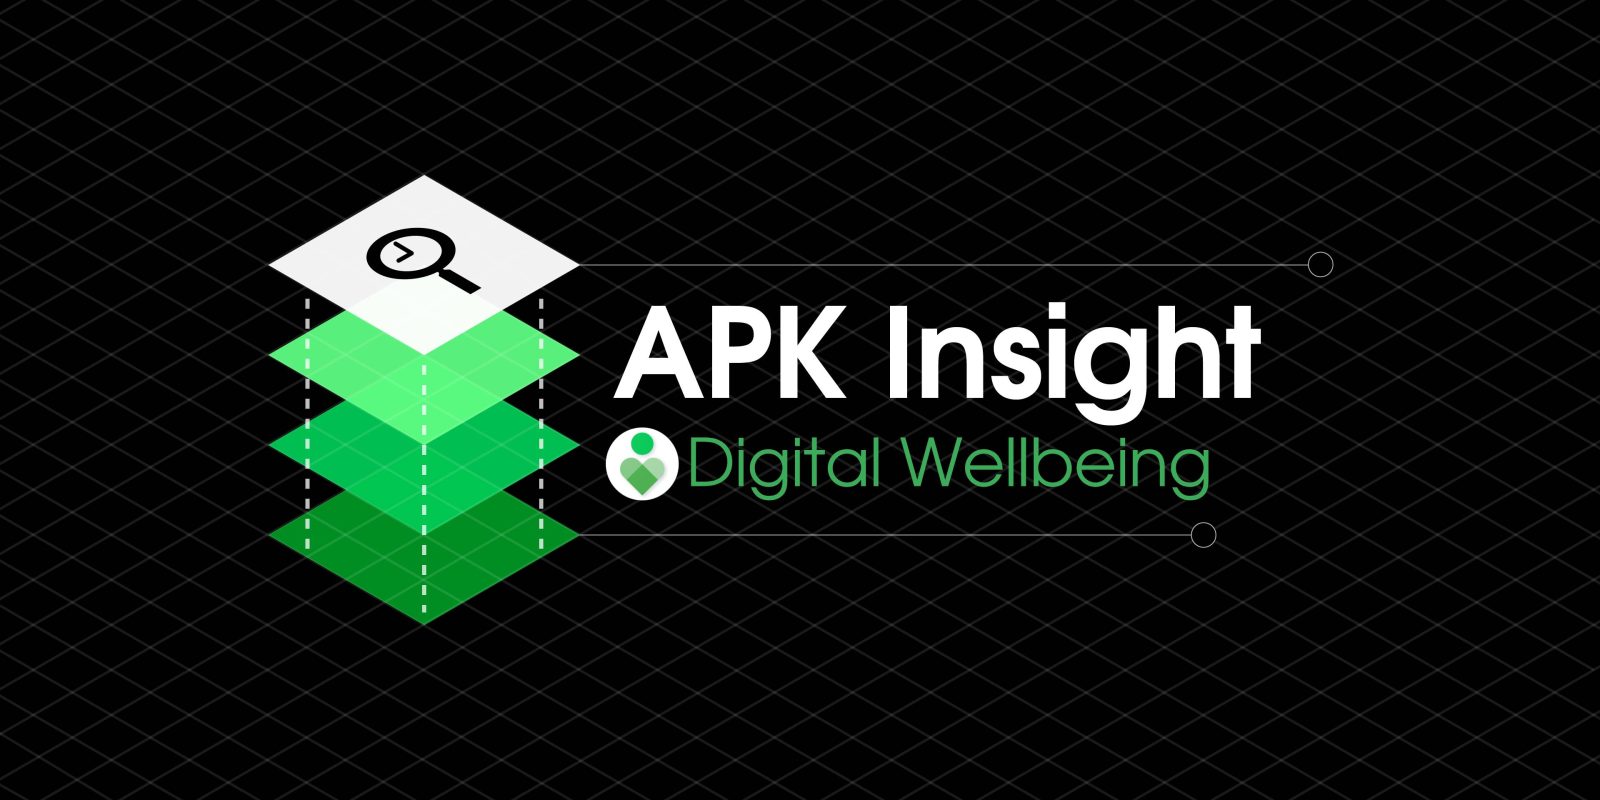 Digital Wellbeing websites